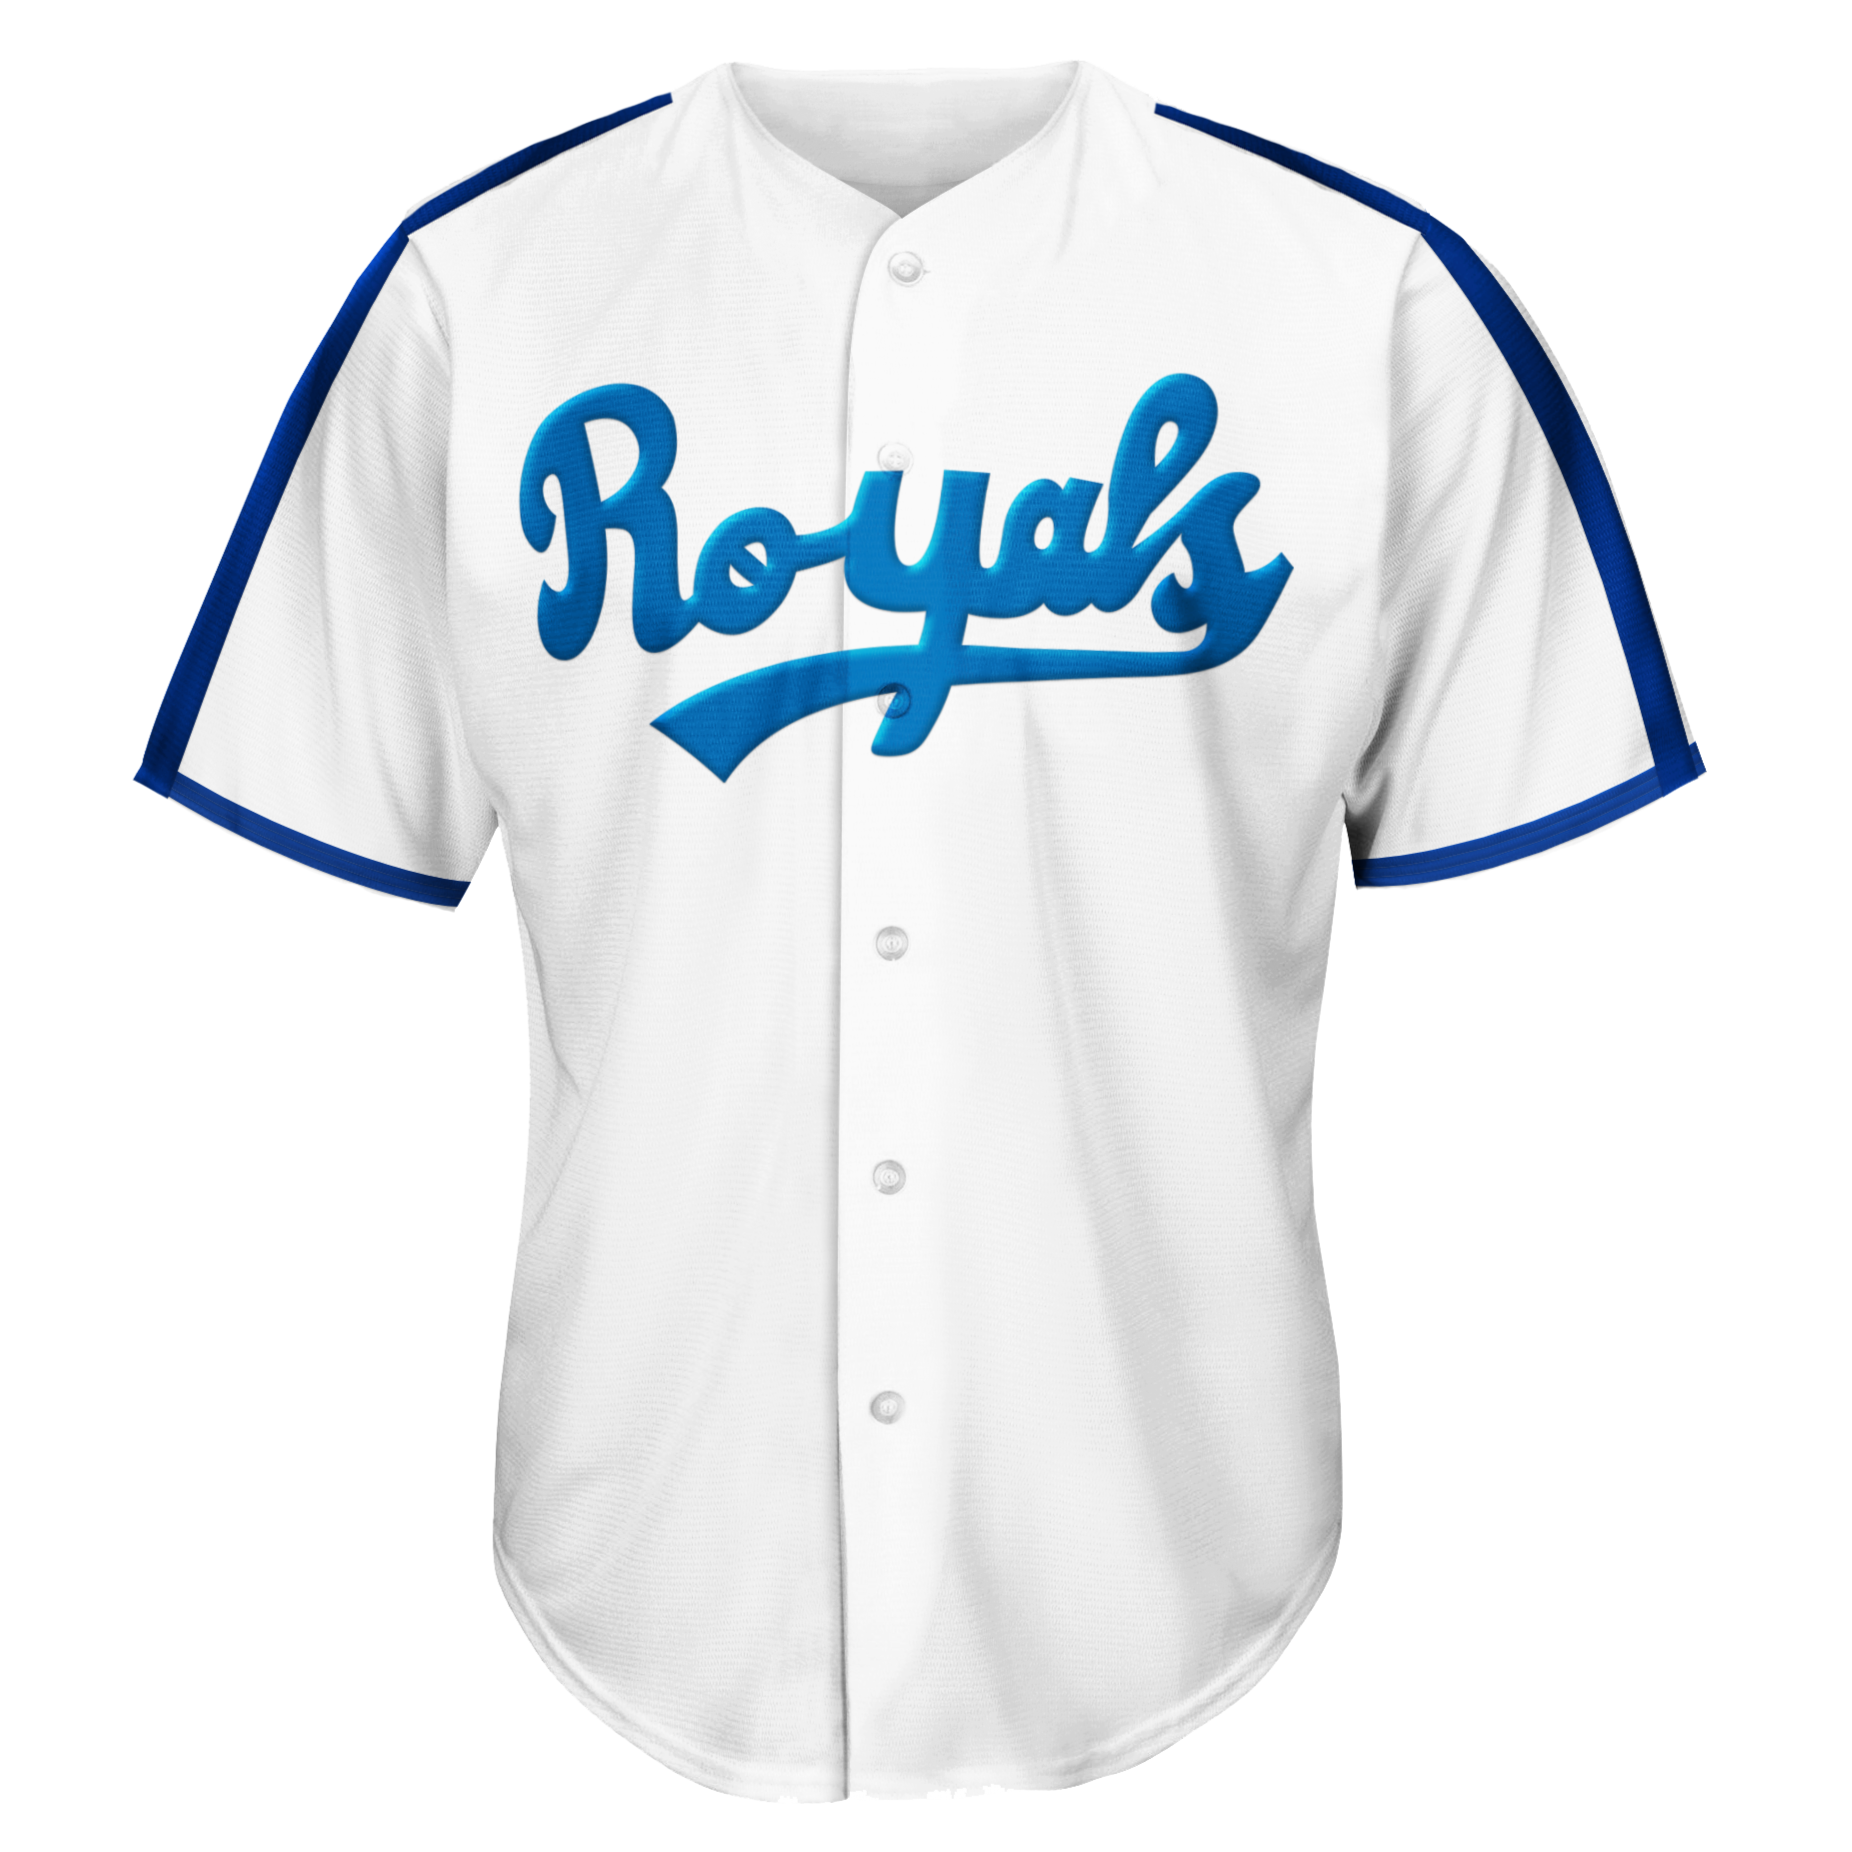 Youth Royal Kansas City Royals MLB Team Jersey Size: 2XL